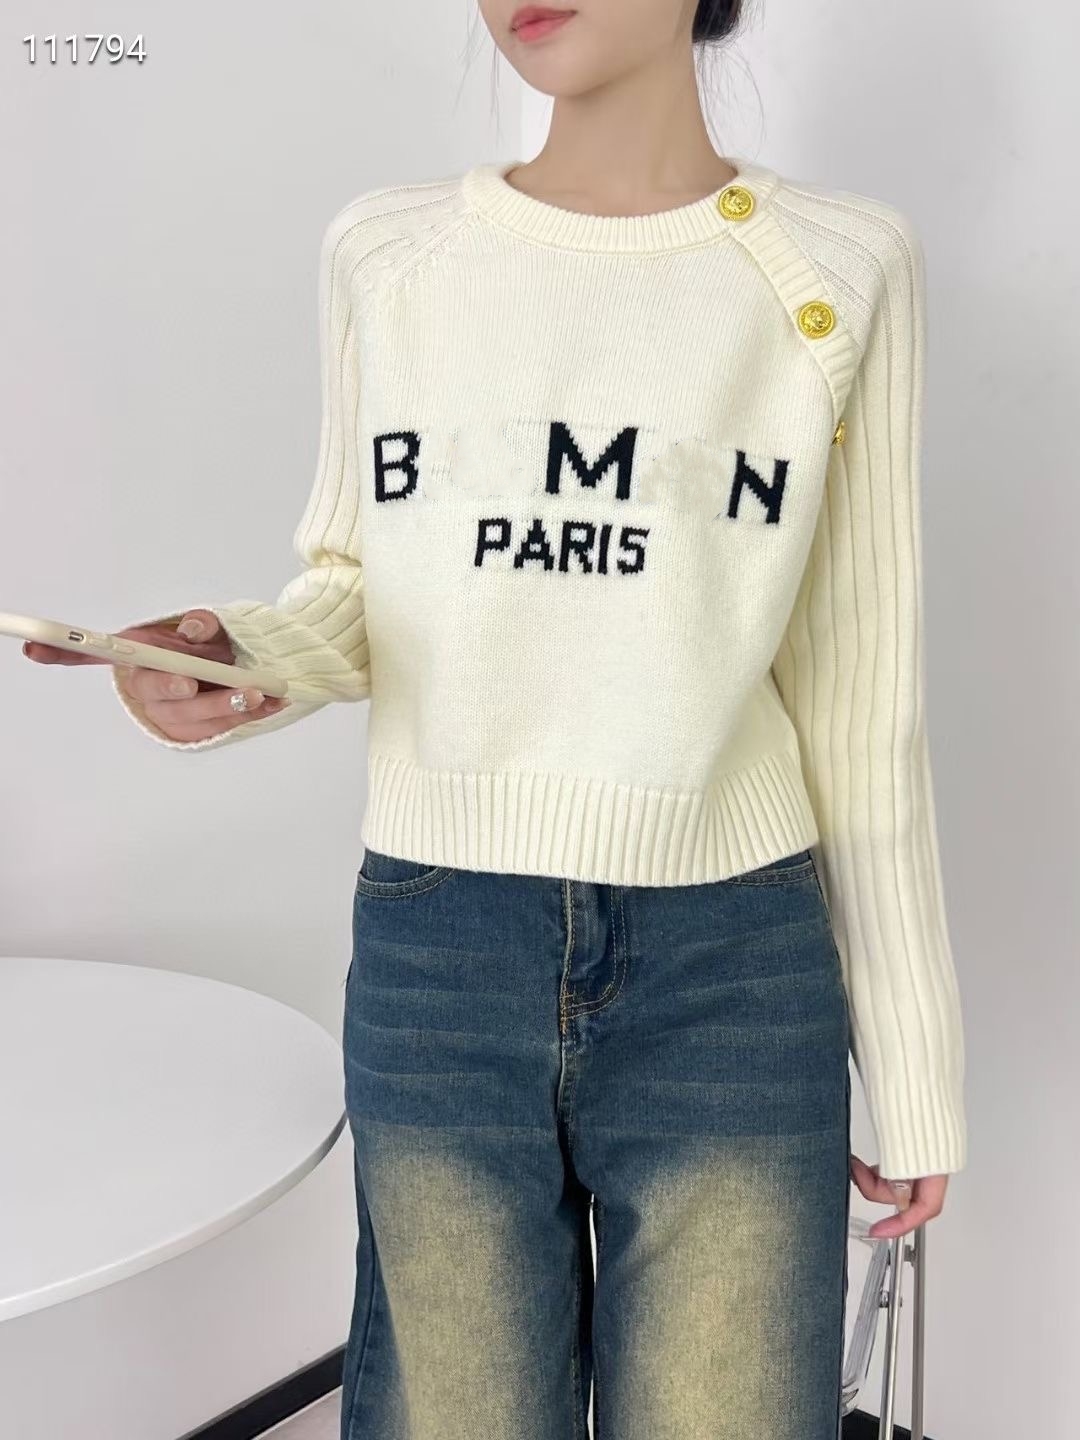 Kadın Sweaters Üstün Yeni Tasarımcı Kazak Kadın Kış Kış Sonbahar Yuvarlak Boyun Uzun Kollu Jacquard Hardigan Örgü Palto Külkü Sweetshirt 2sp1